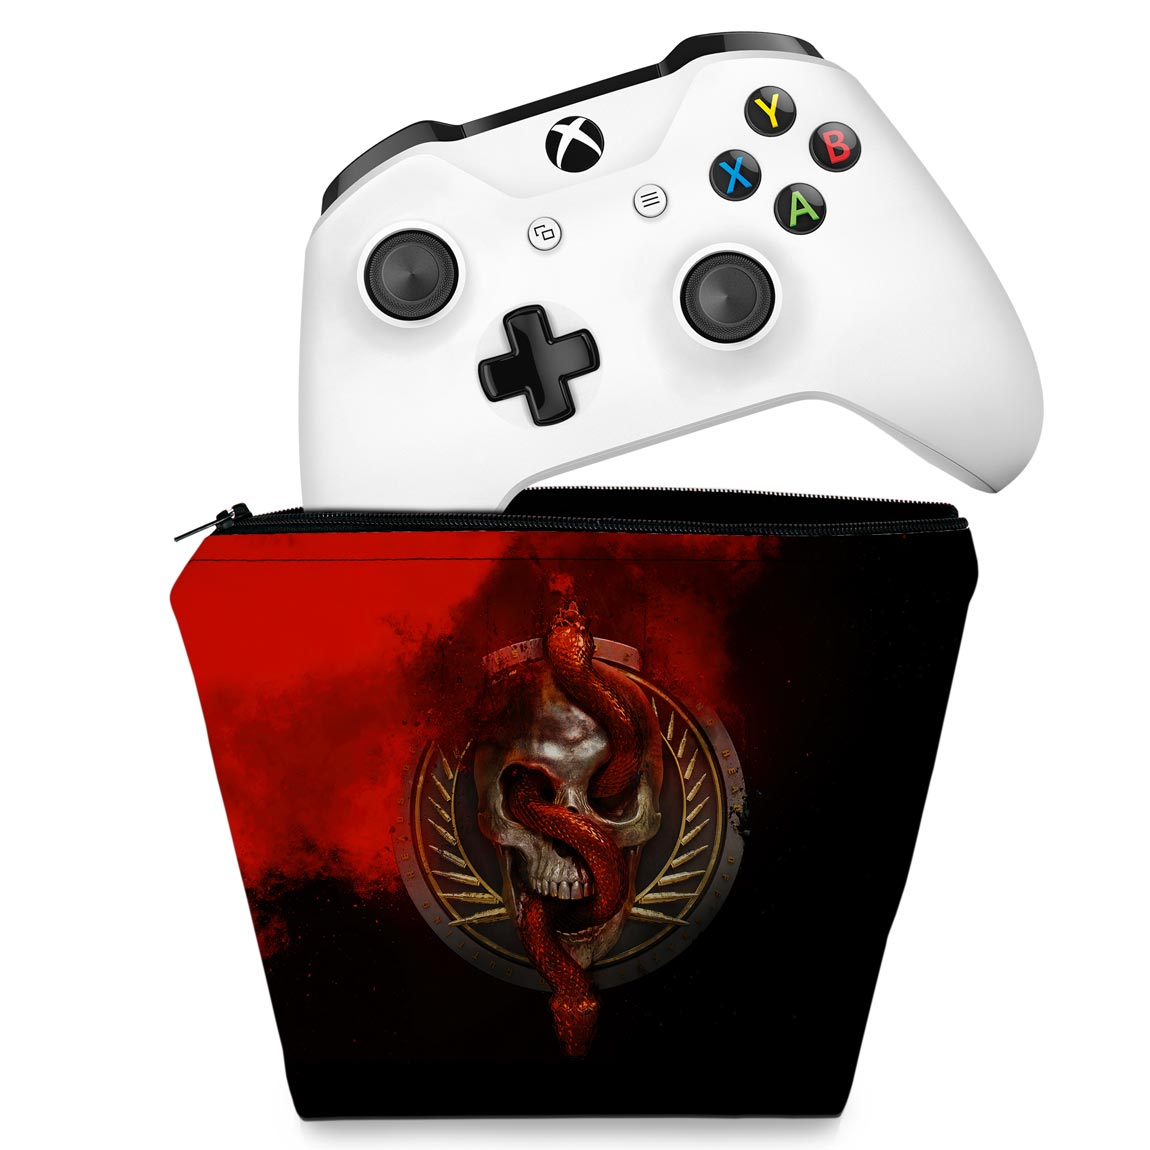 CD Projekt promete dar reembolso da DLC para todos os proprietários do Xbox  One X versão